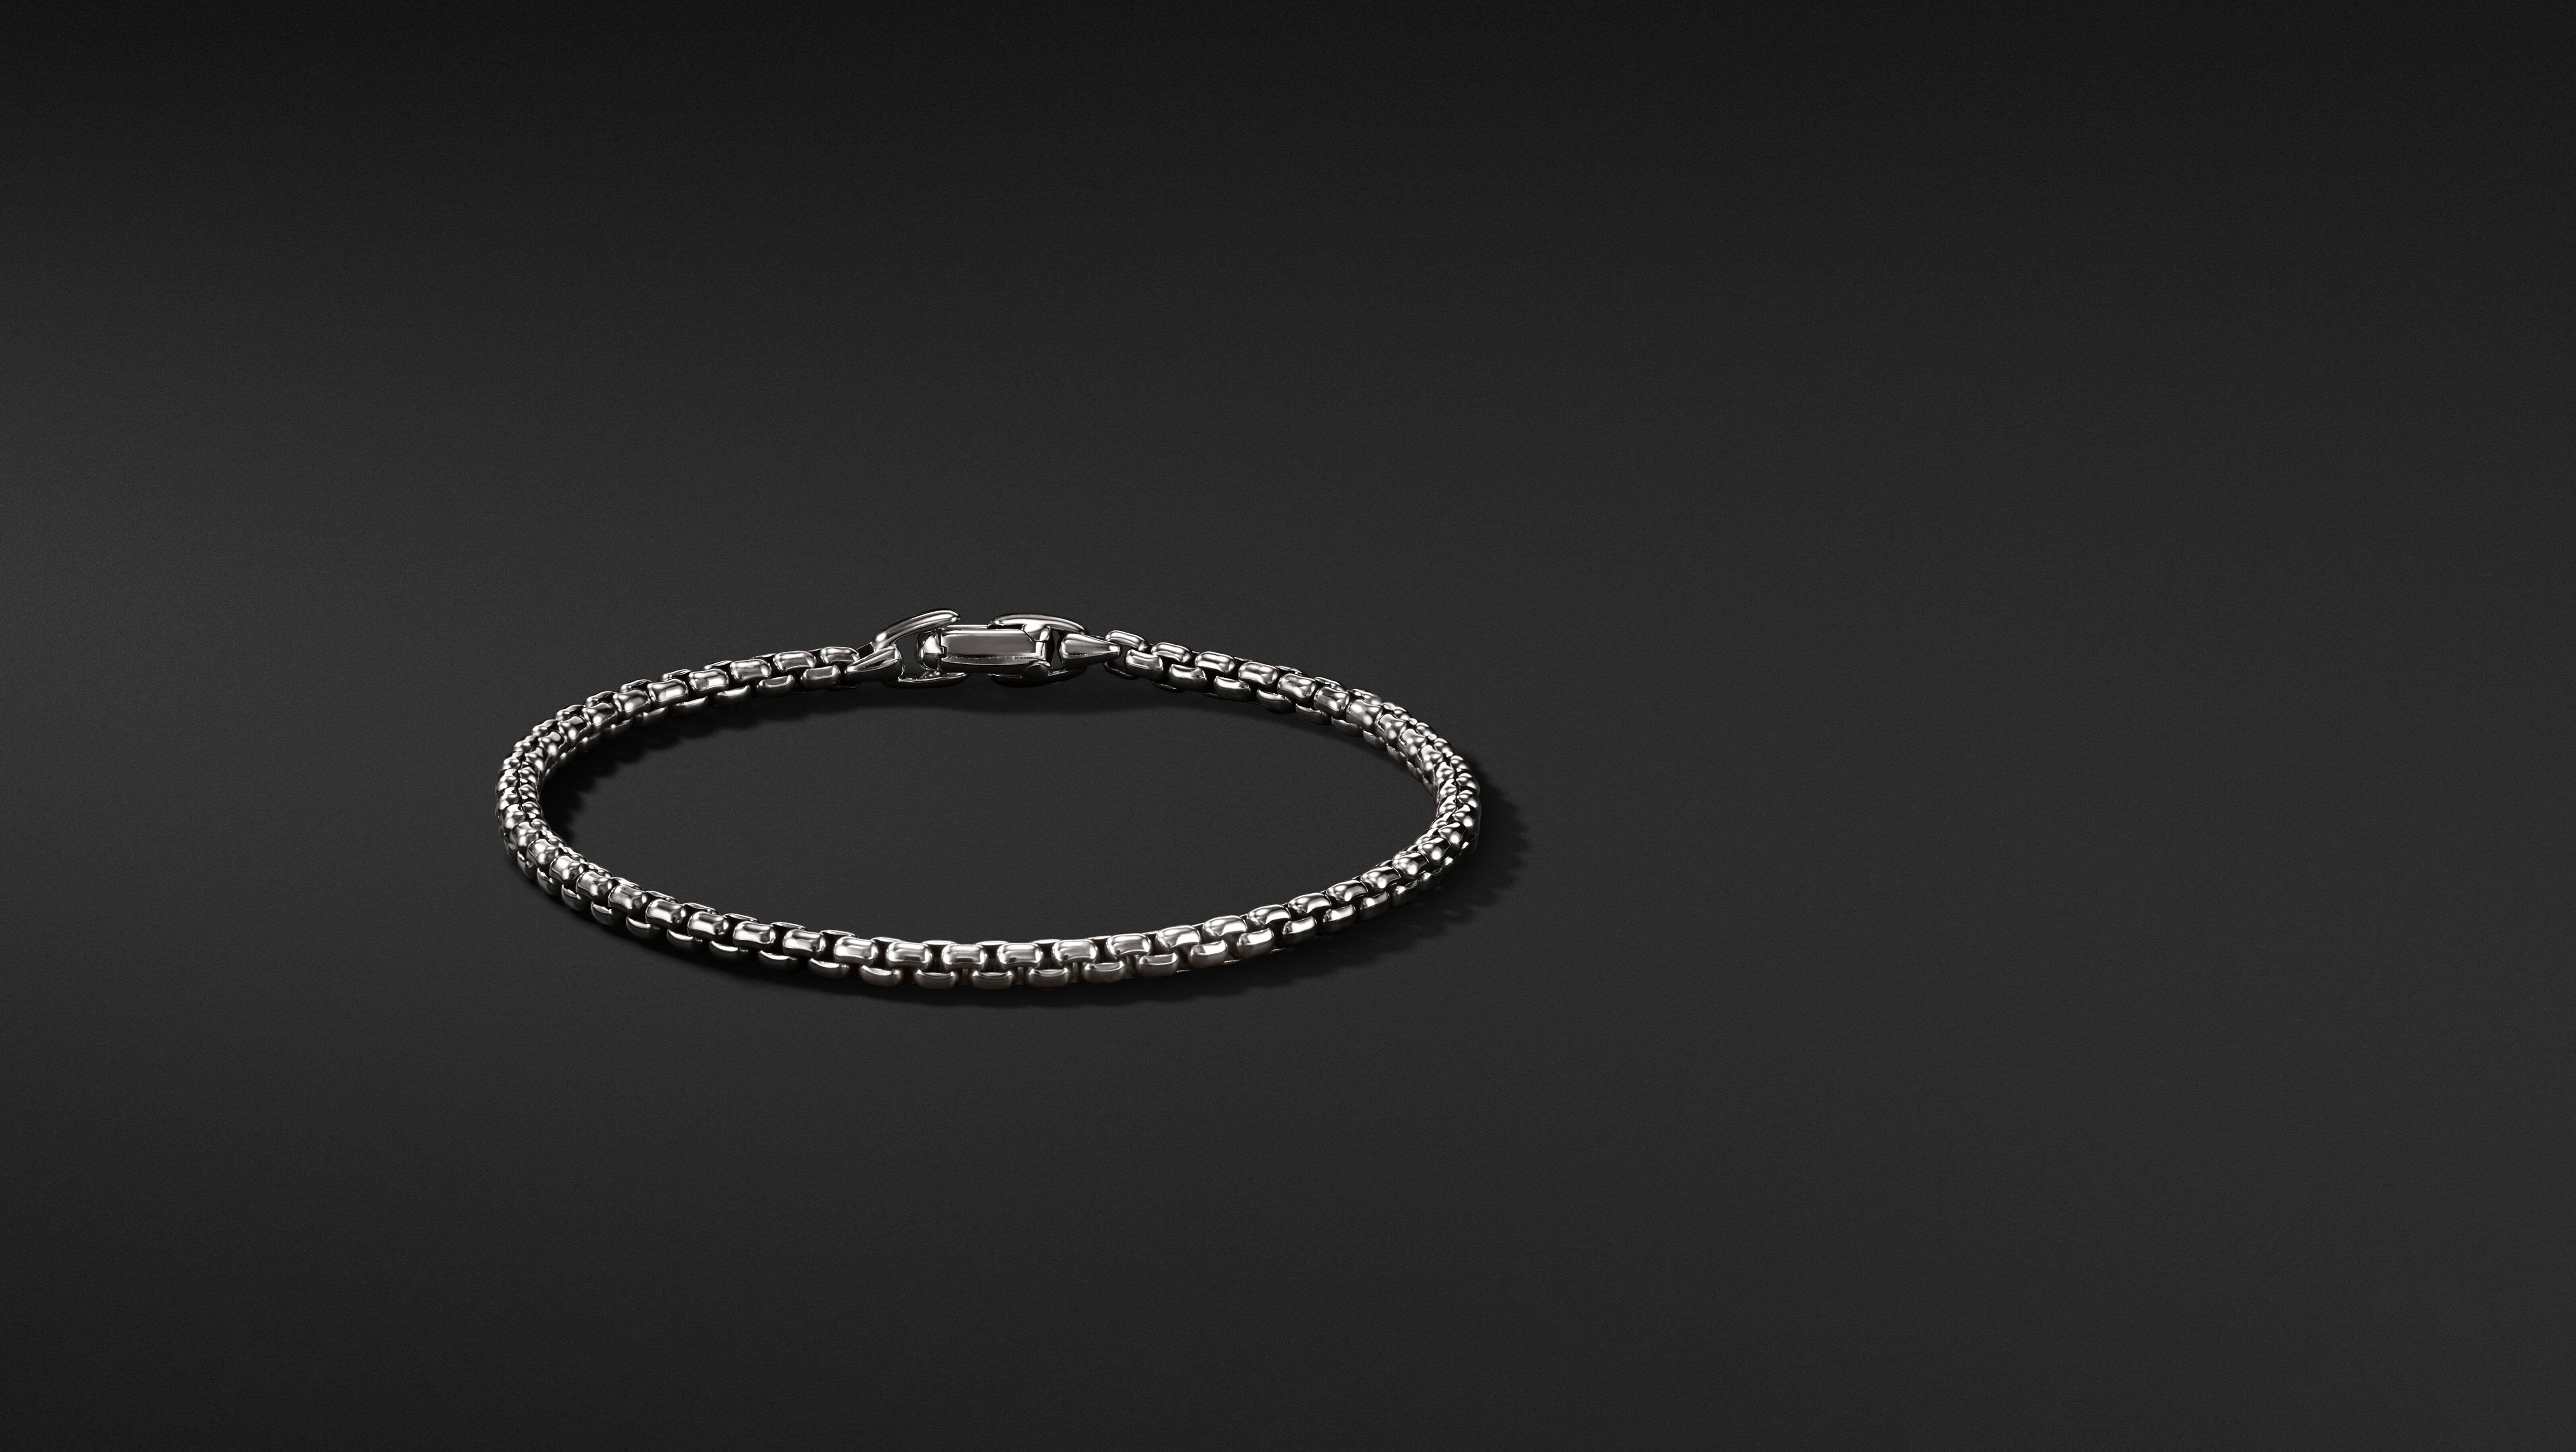 Update 80+ silver chain bracelet rdr2 latest - 3tdesign.edu.vn